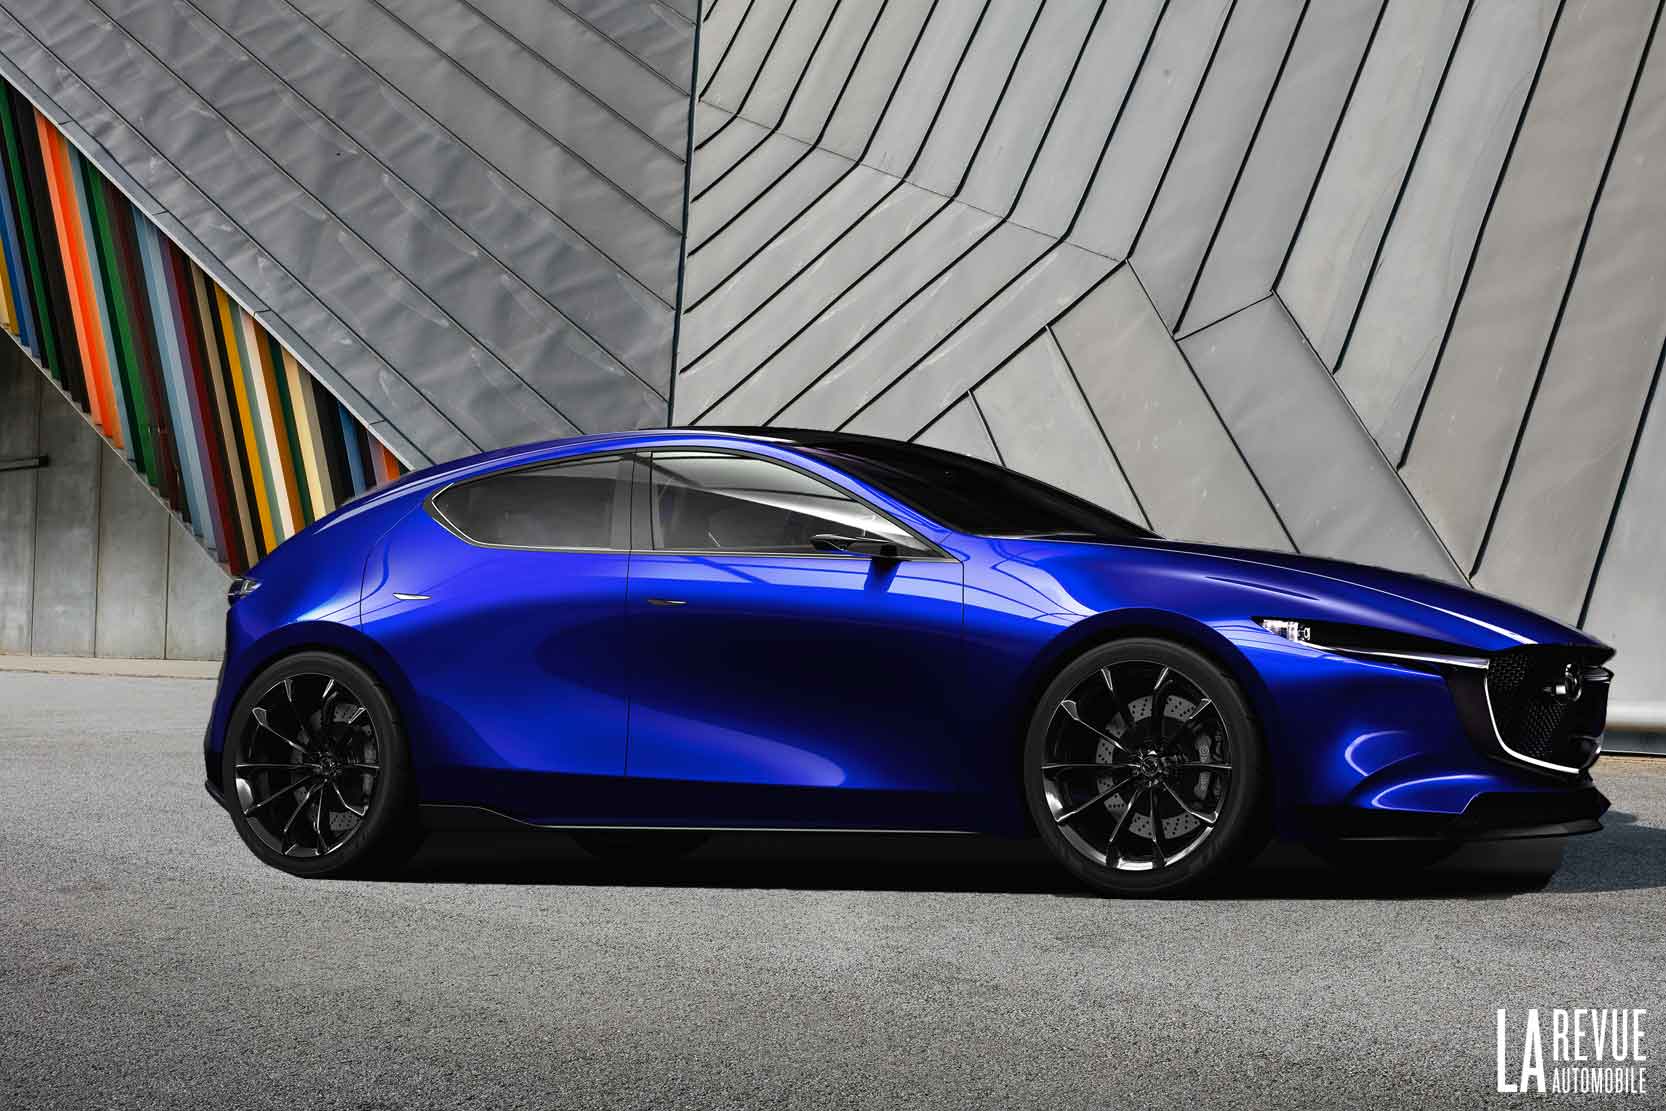 Image principale de l'actu: La nouvelle Mazda 3, c'est elle